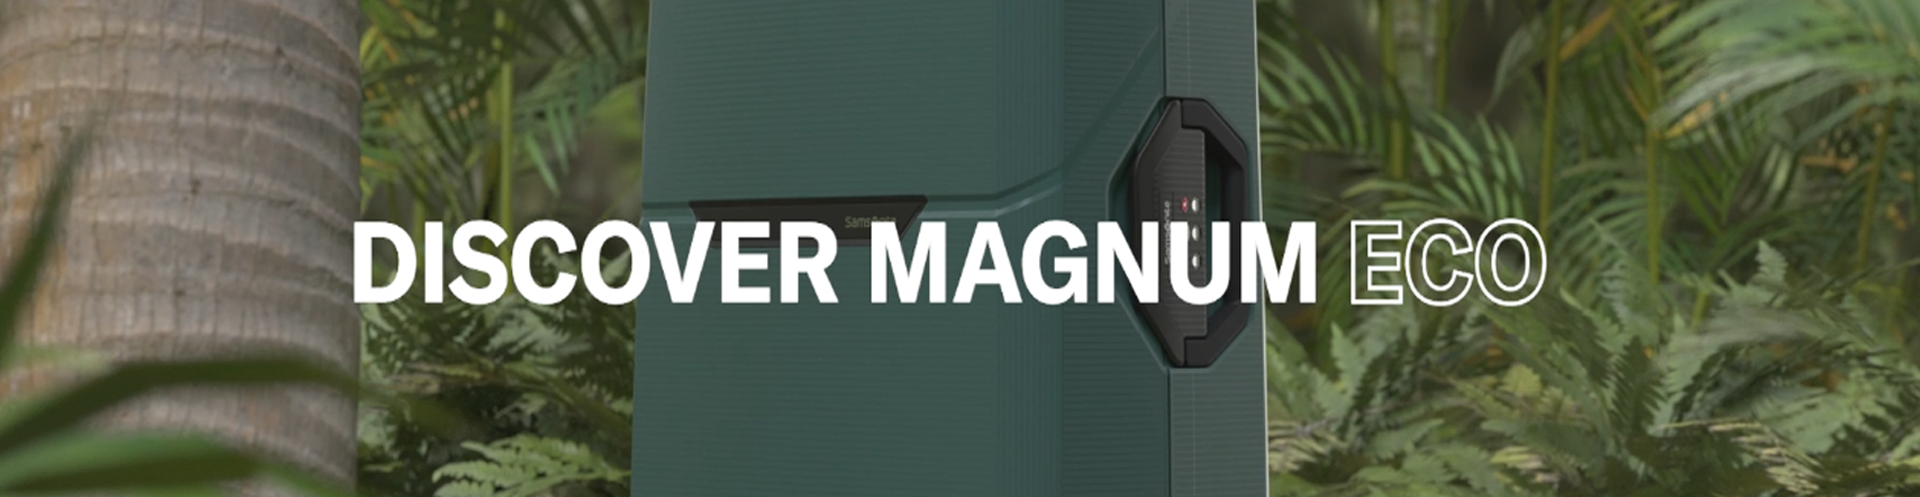 discover magnum eco